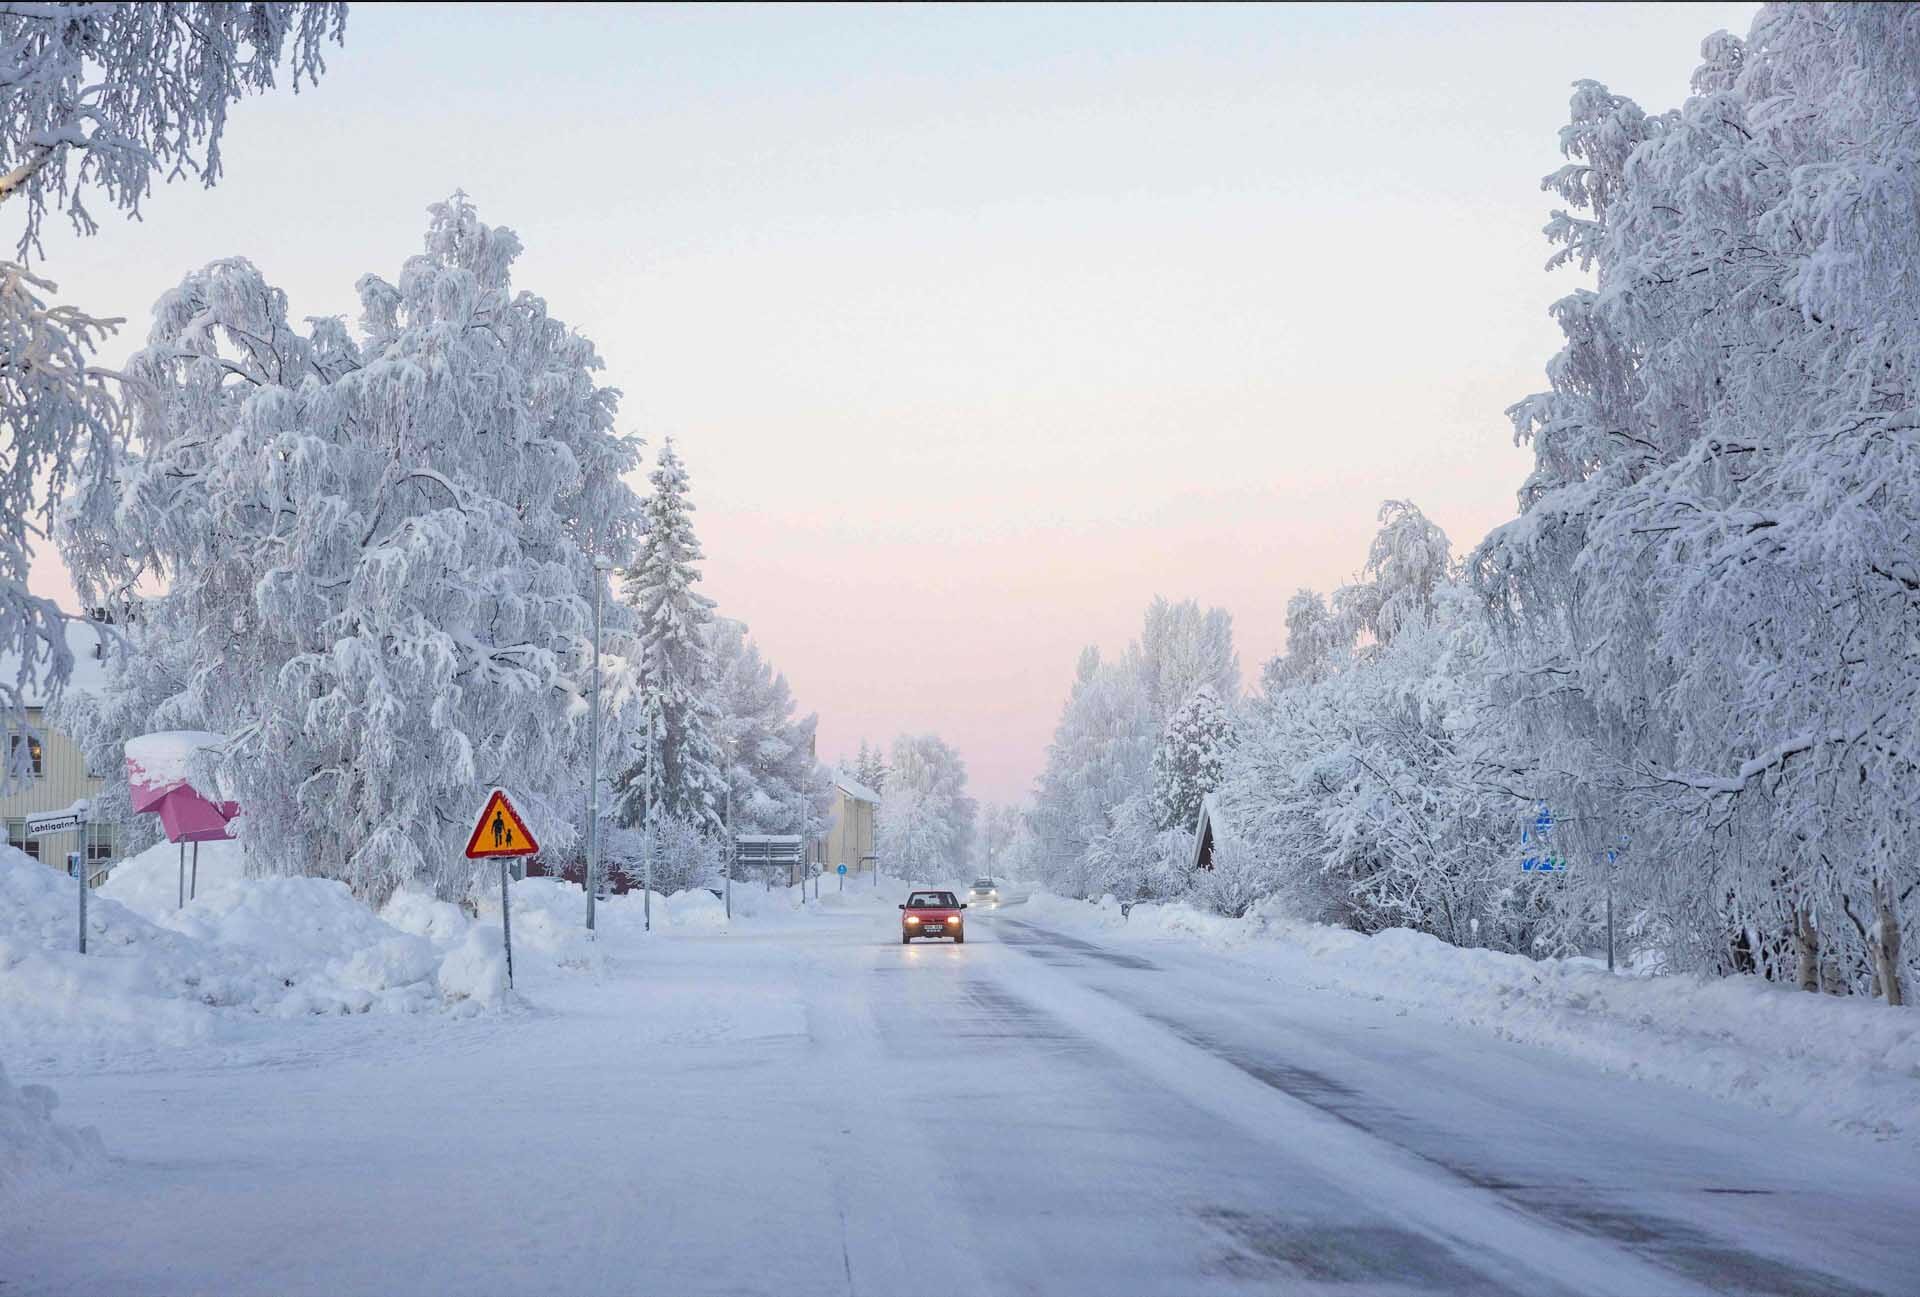 สวีเดนเผชิญหน้า “มกราคมหนาวสุด” ใน 25 ปีหลังอุณหภูมิดิ่ง -43.6 องศาเซลเซียส